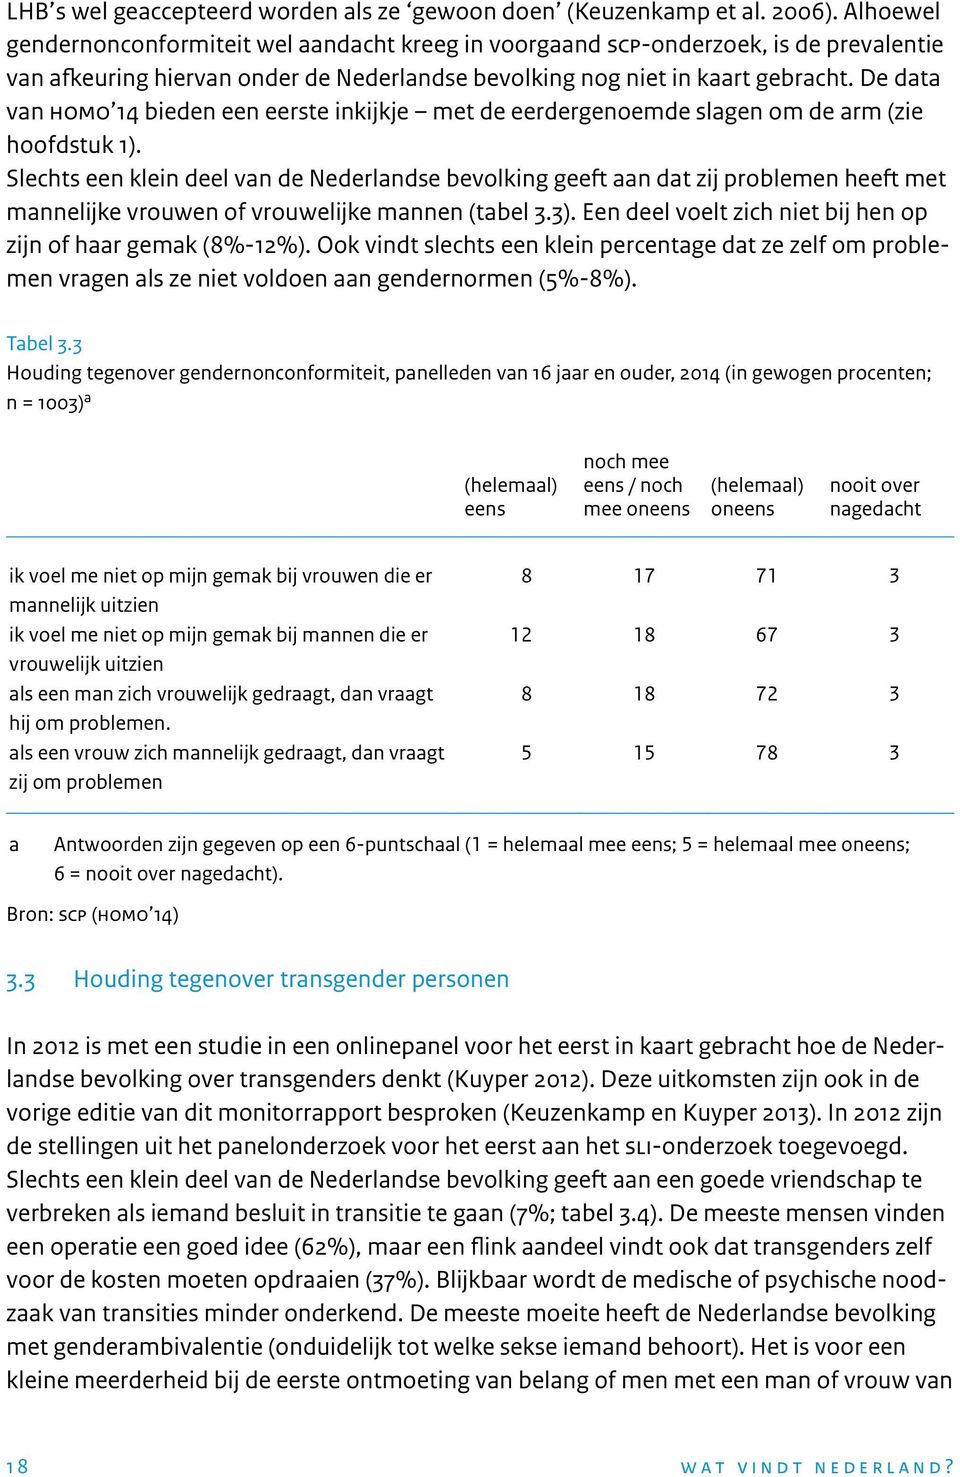 De data van homo 14 bieden een eerste inkijkje met de eerdergenoemde slagen om de arm (zie hoofdstuk 1).